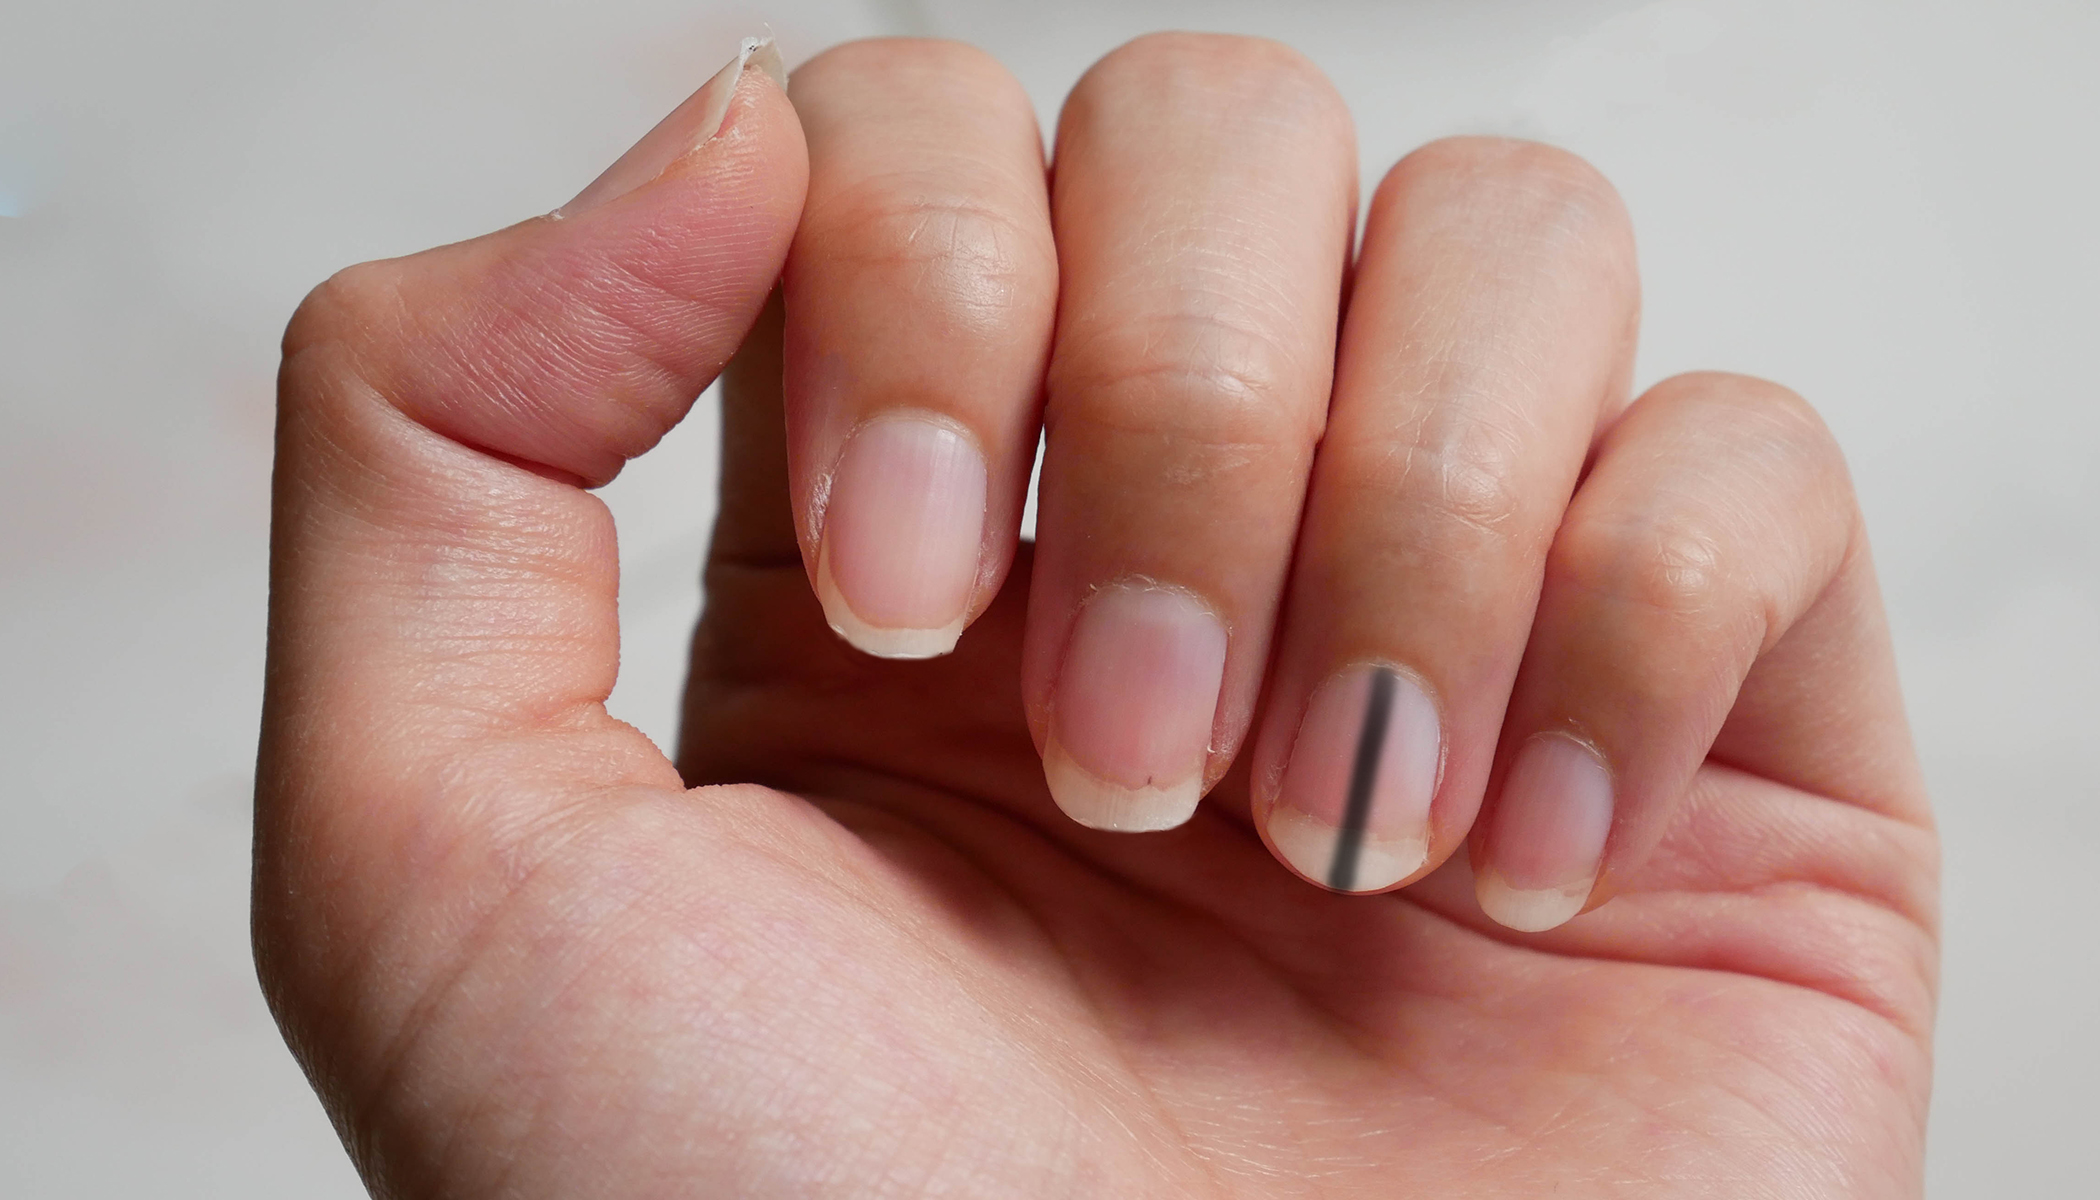 Stripe Under Fingernails Could Be Sign of Cancer, Doctor Warns